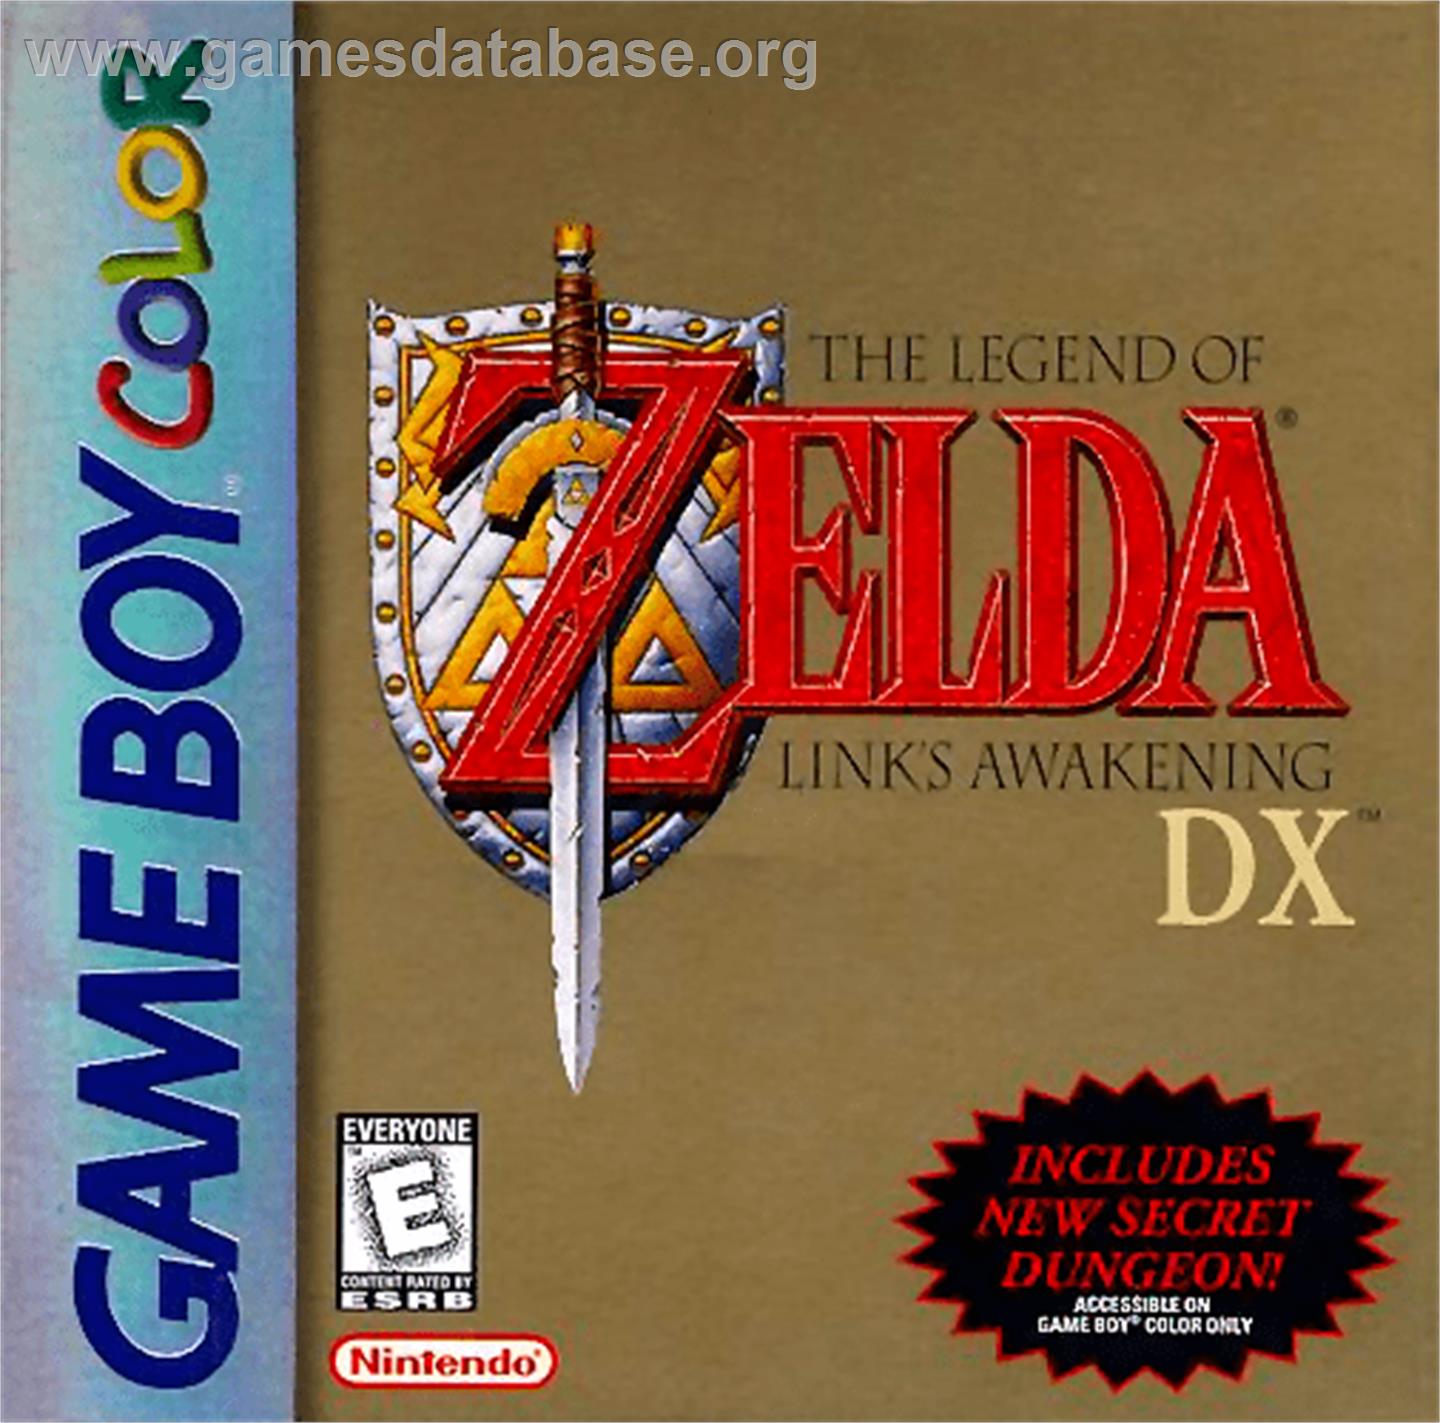 Legend of Zelda: Link's Awakening DX - Nintendo Game Boy Color - Artwork - Box